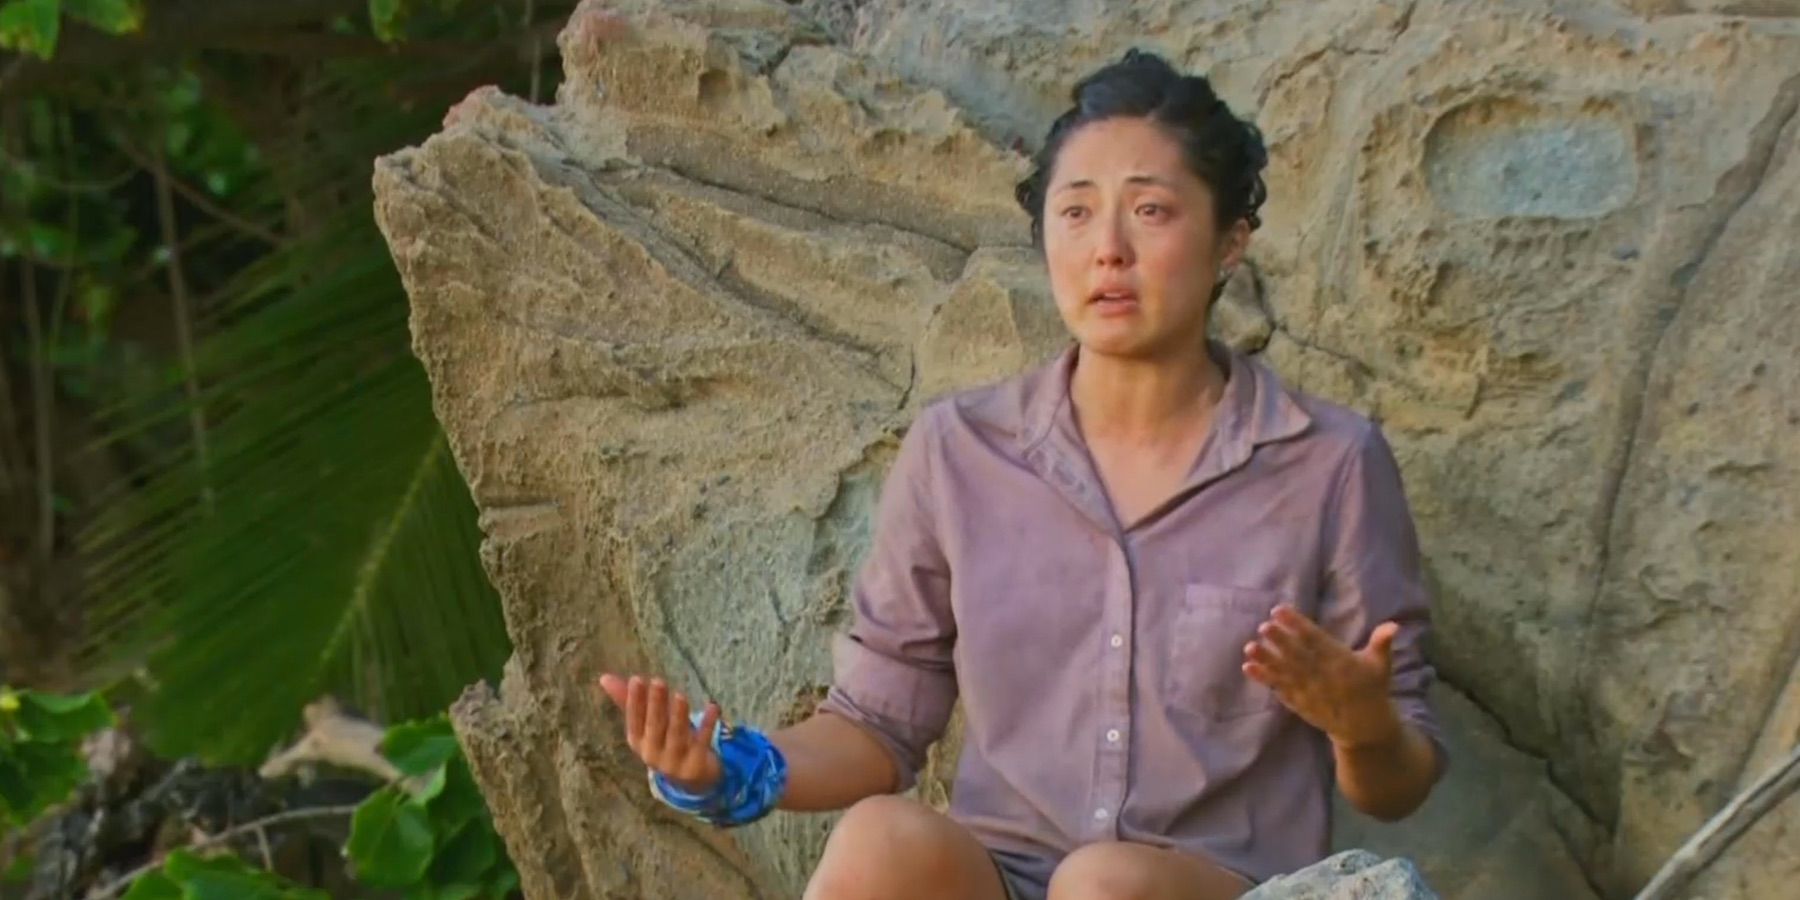 Kellee Kim on Survivor, sitting on a rock wearing a sweater.